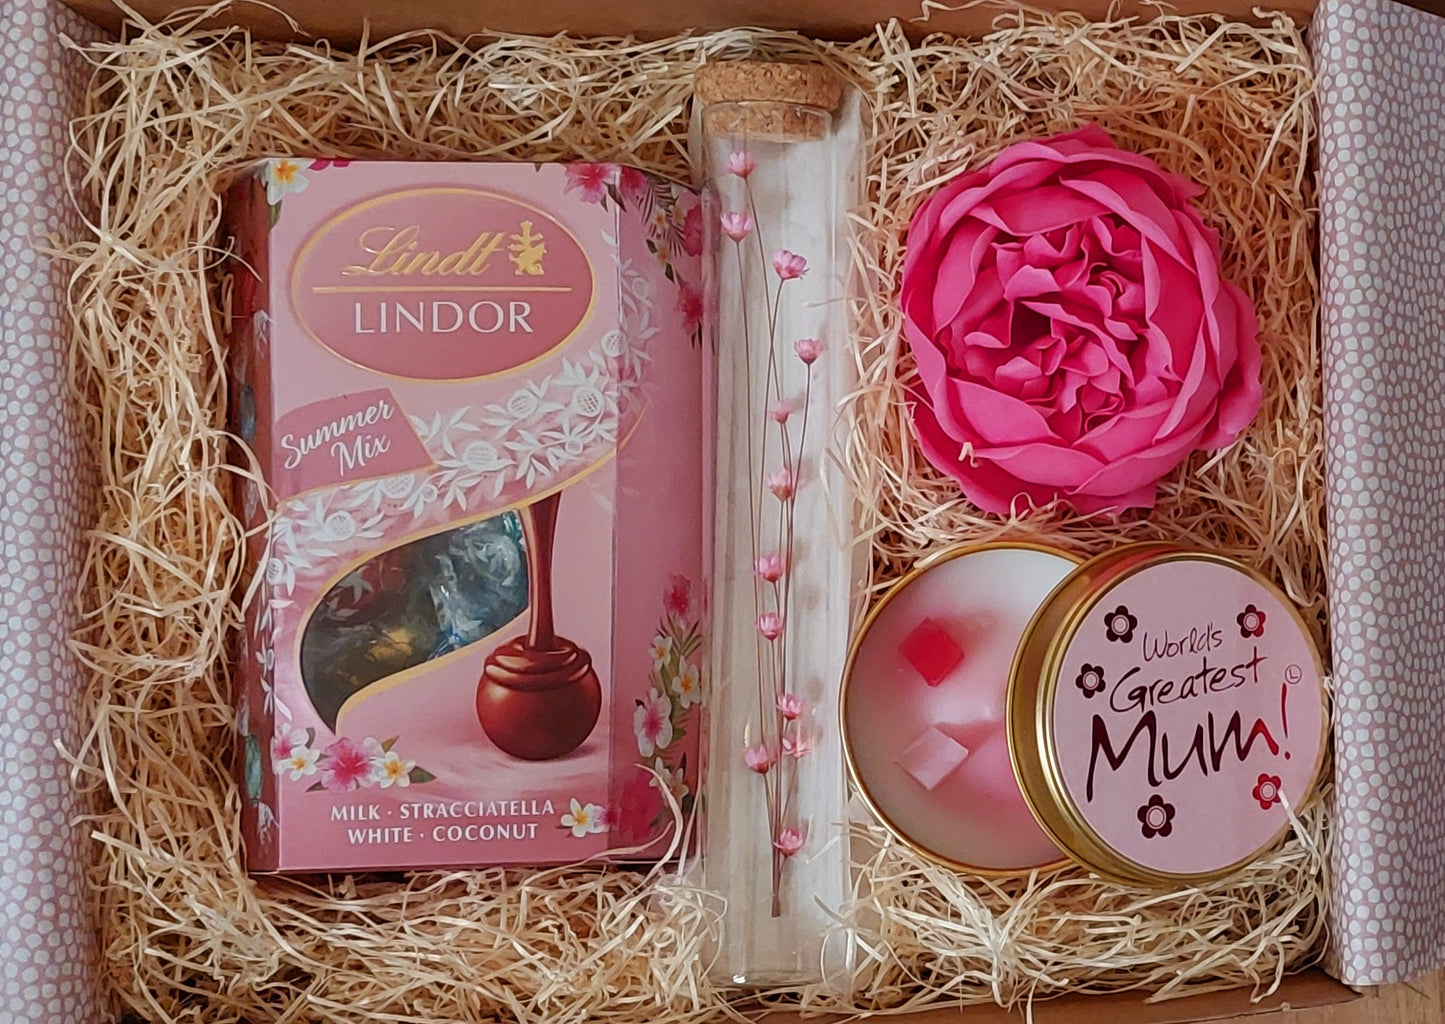 The world's greatest mum gift box